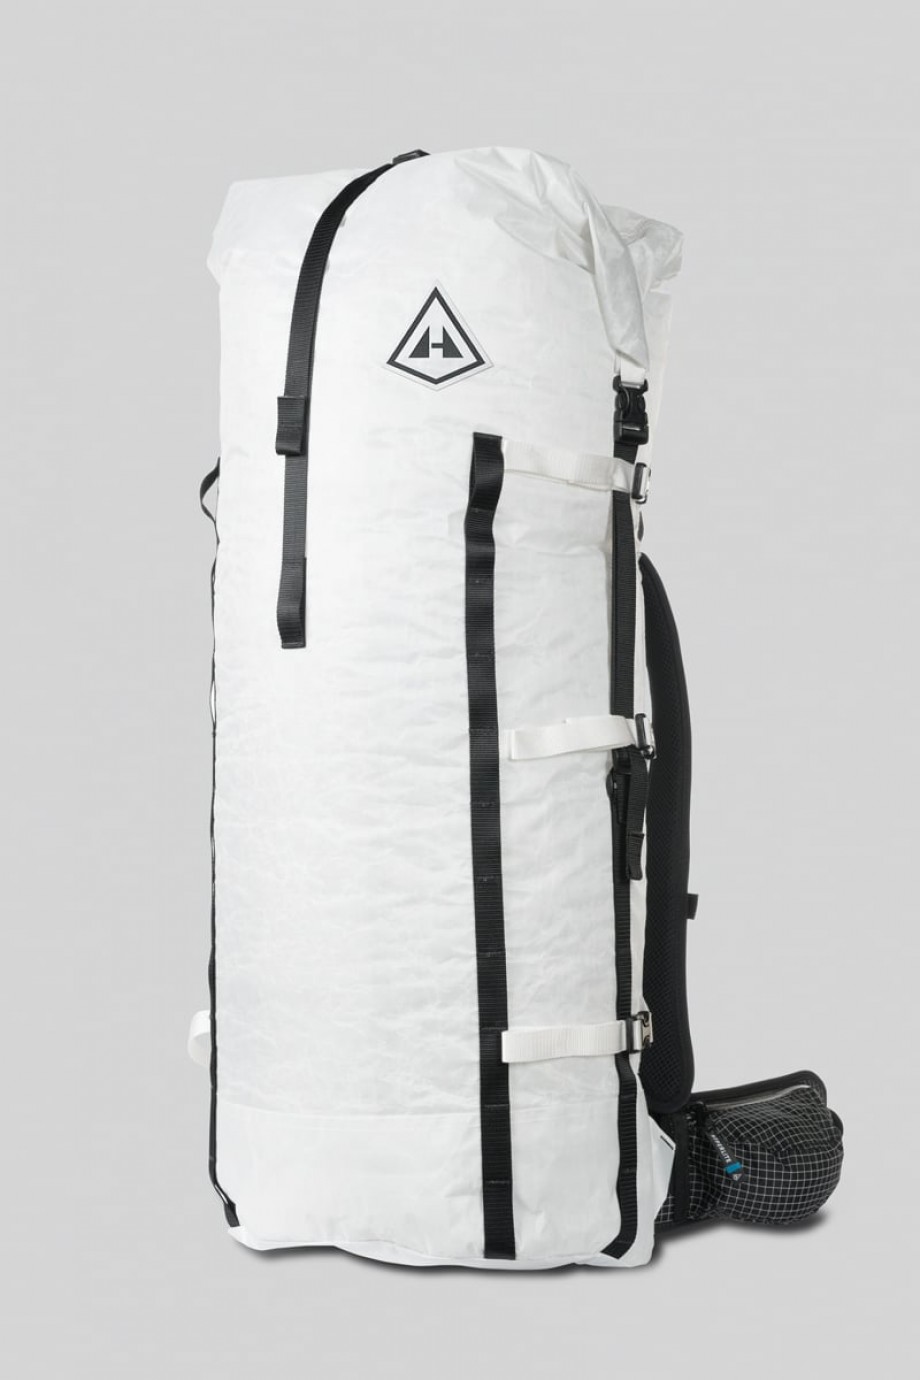 Hyperlite mountain gear Porter pack 3400 55L backpack - Backpackinglight.dk